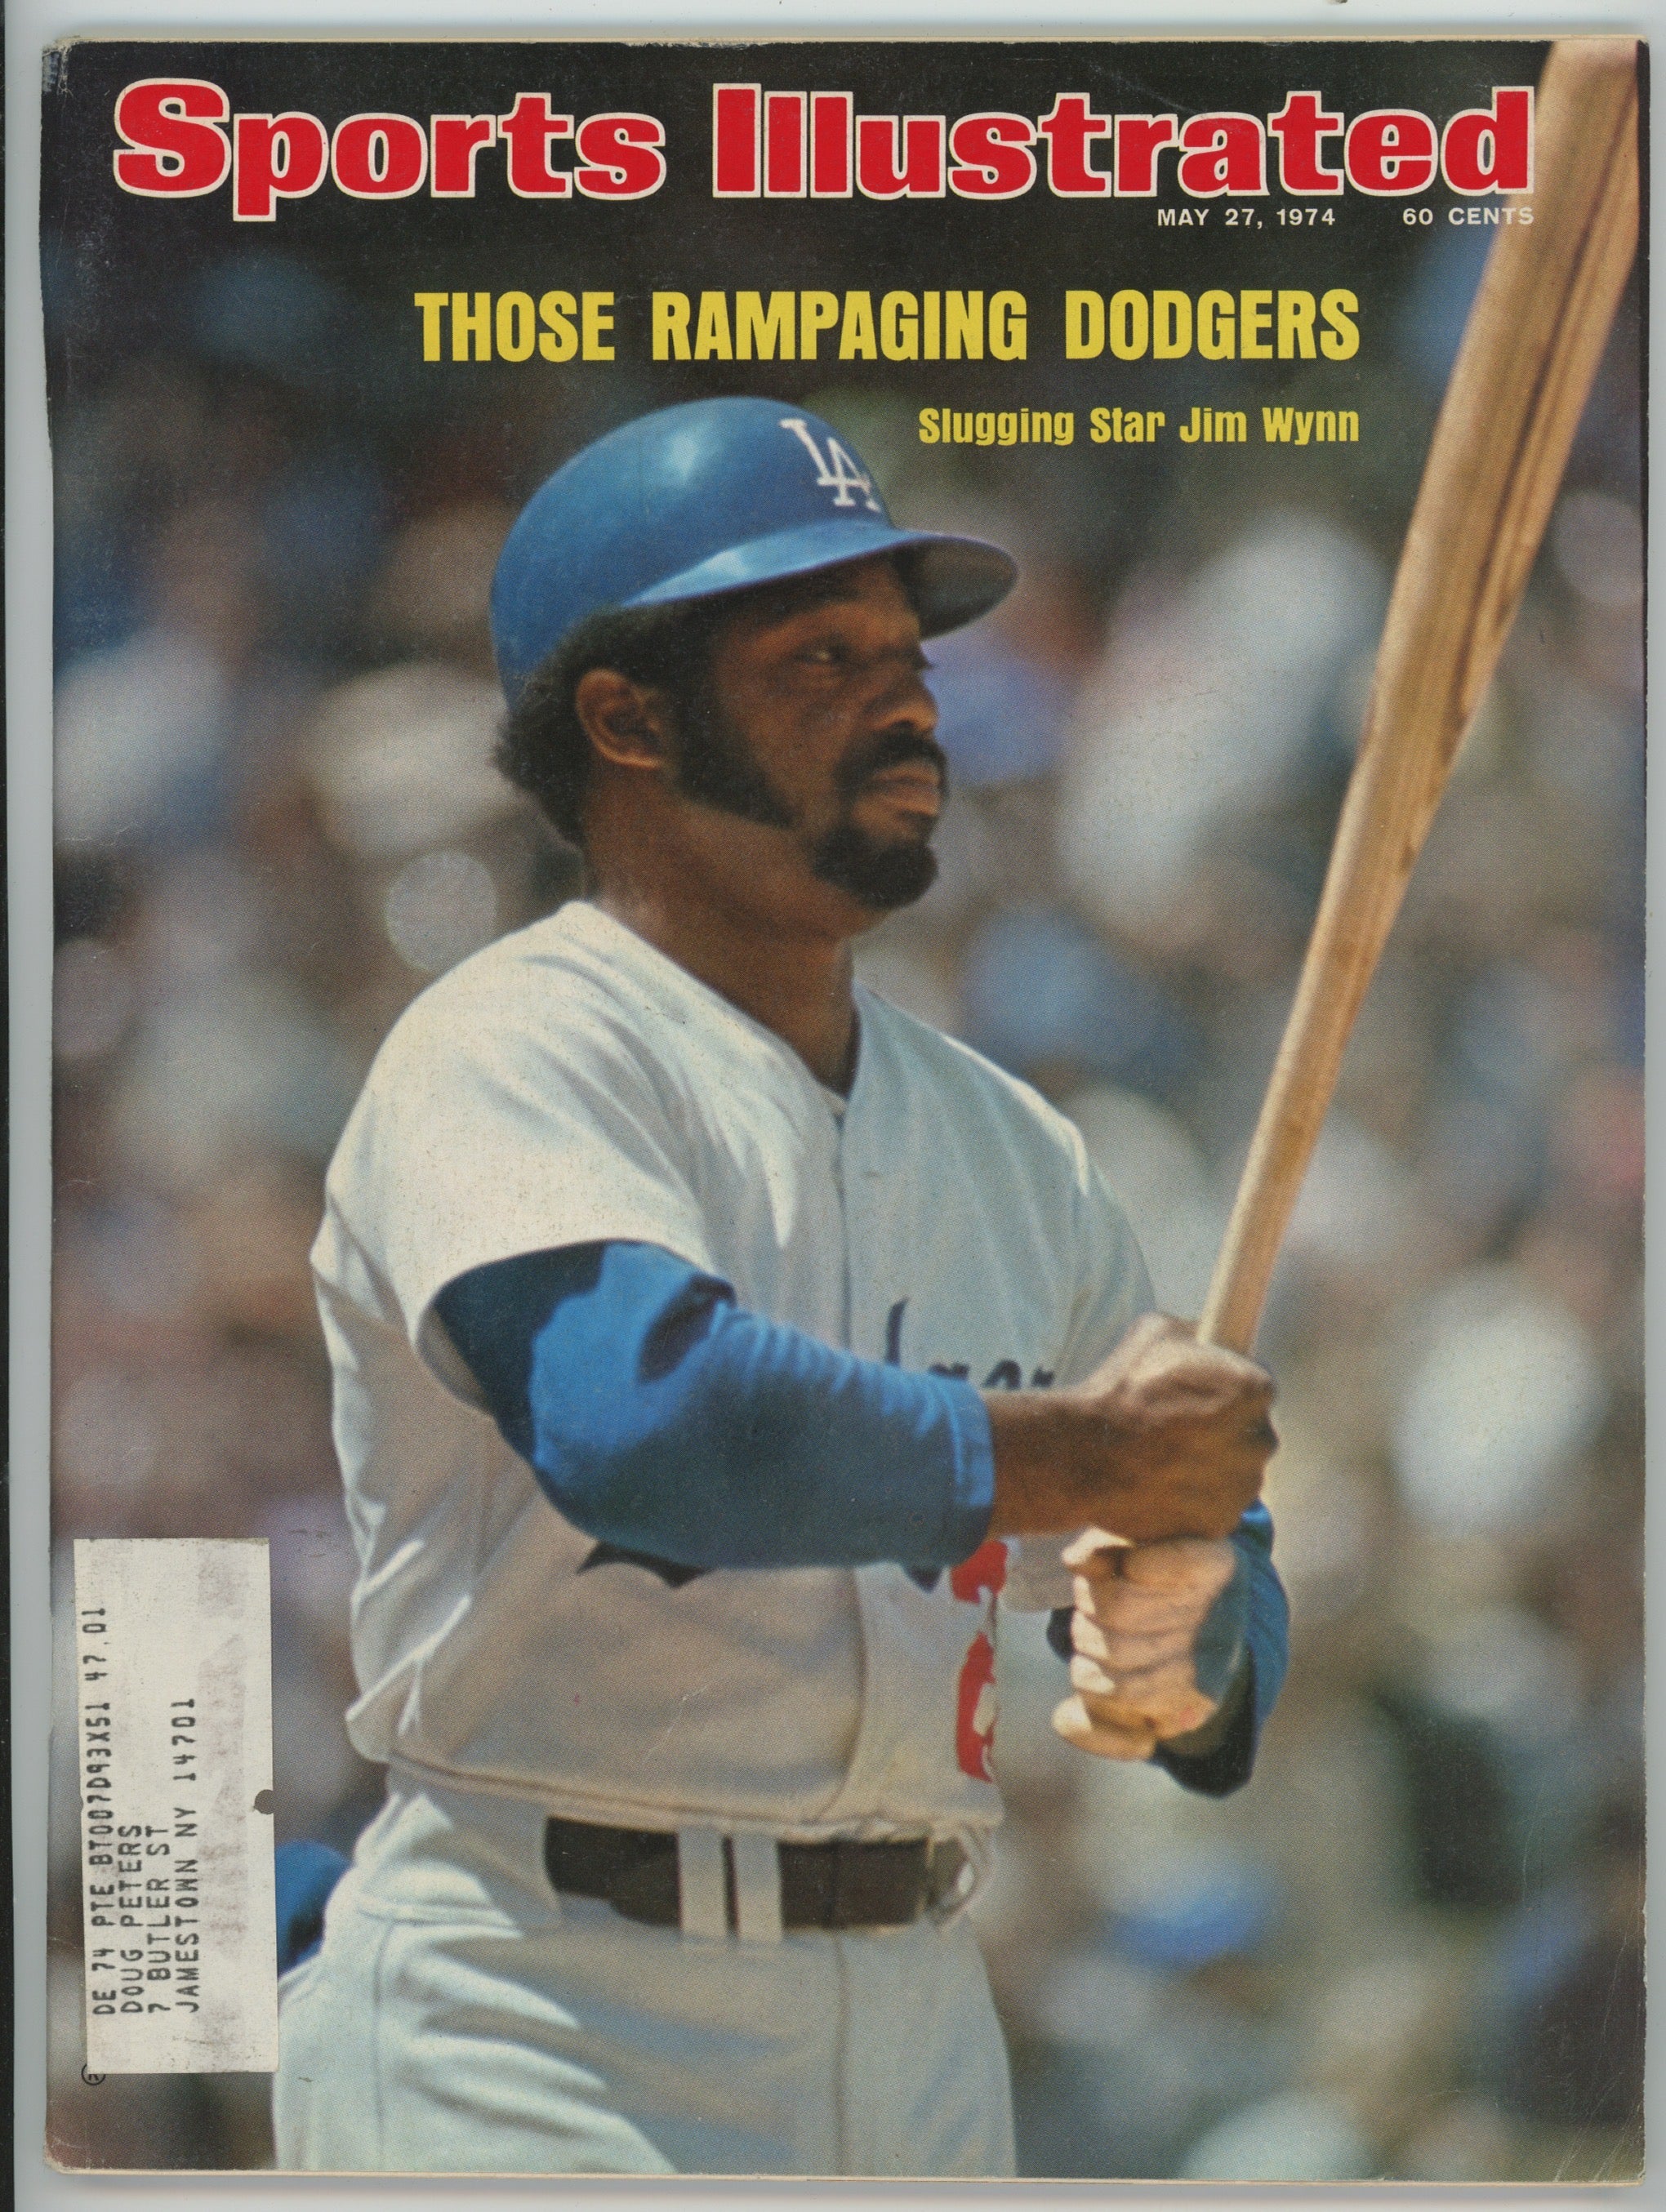 Jim Wynn L.A. Dodgers "Those Rampaging Dodgers" 5/27/74 Sports Illustrated ML